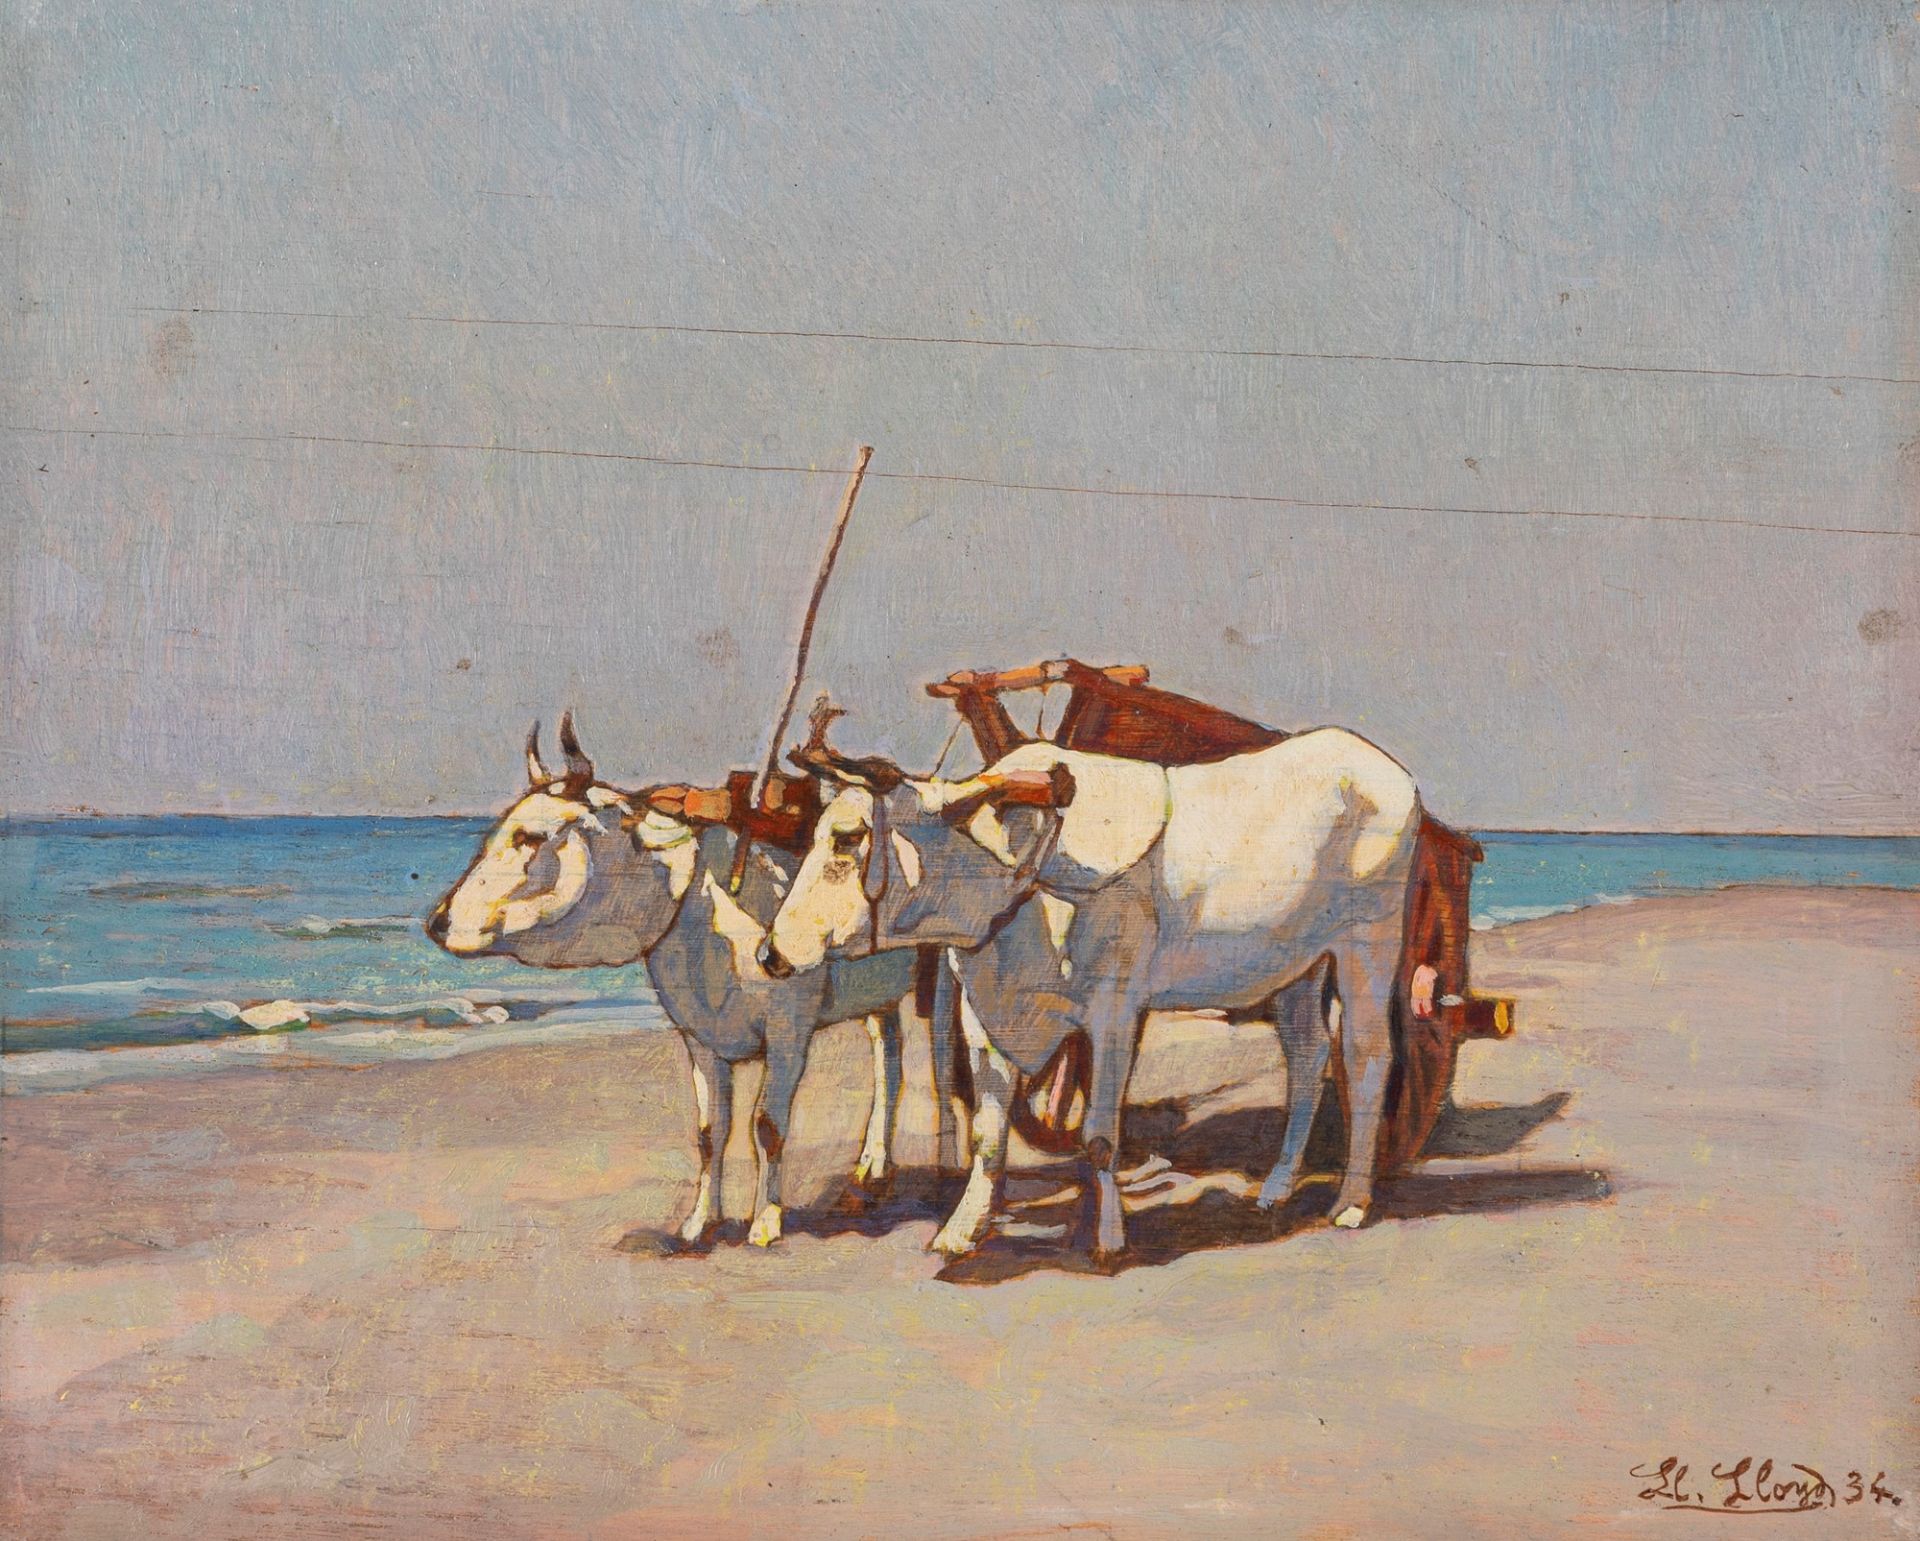 Llewelyn Lloyd (Livorno 1879-Firenze 1949) - Oxen on the beach, 1934